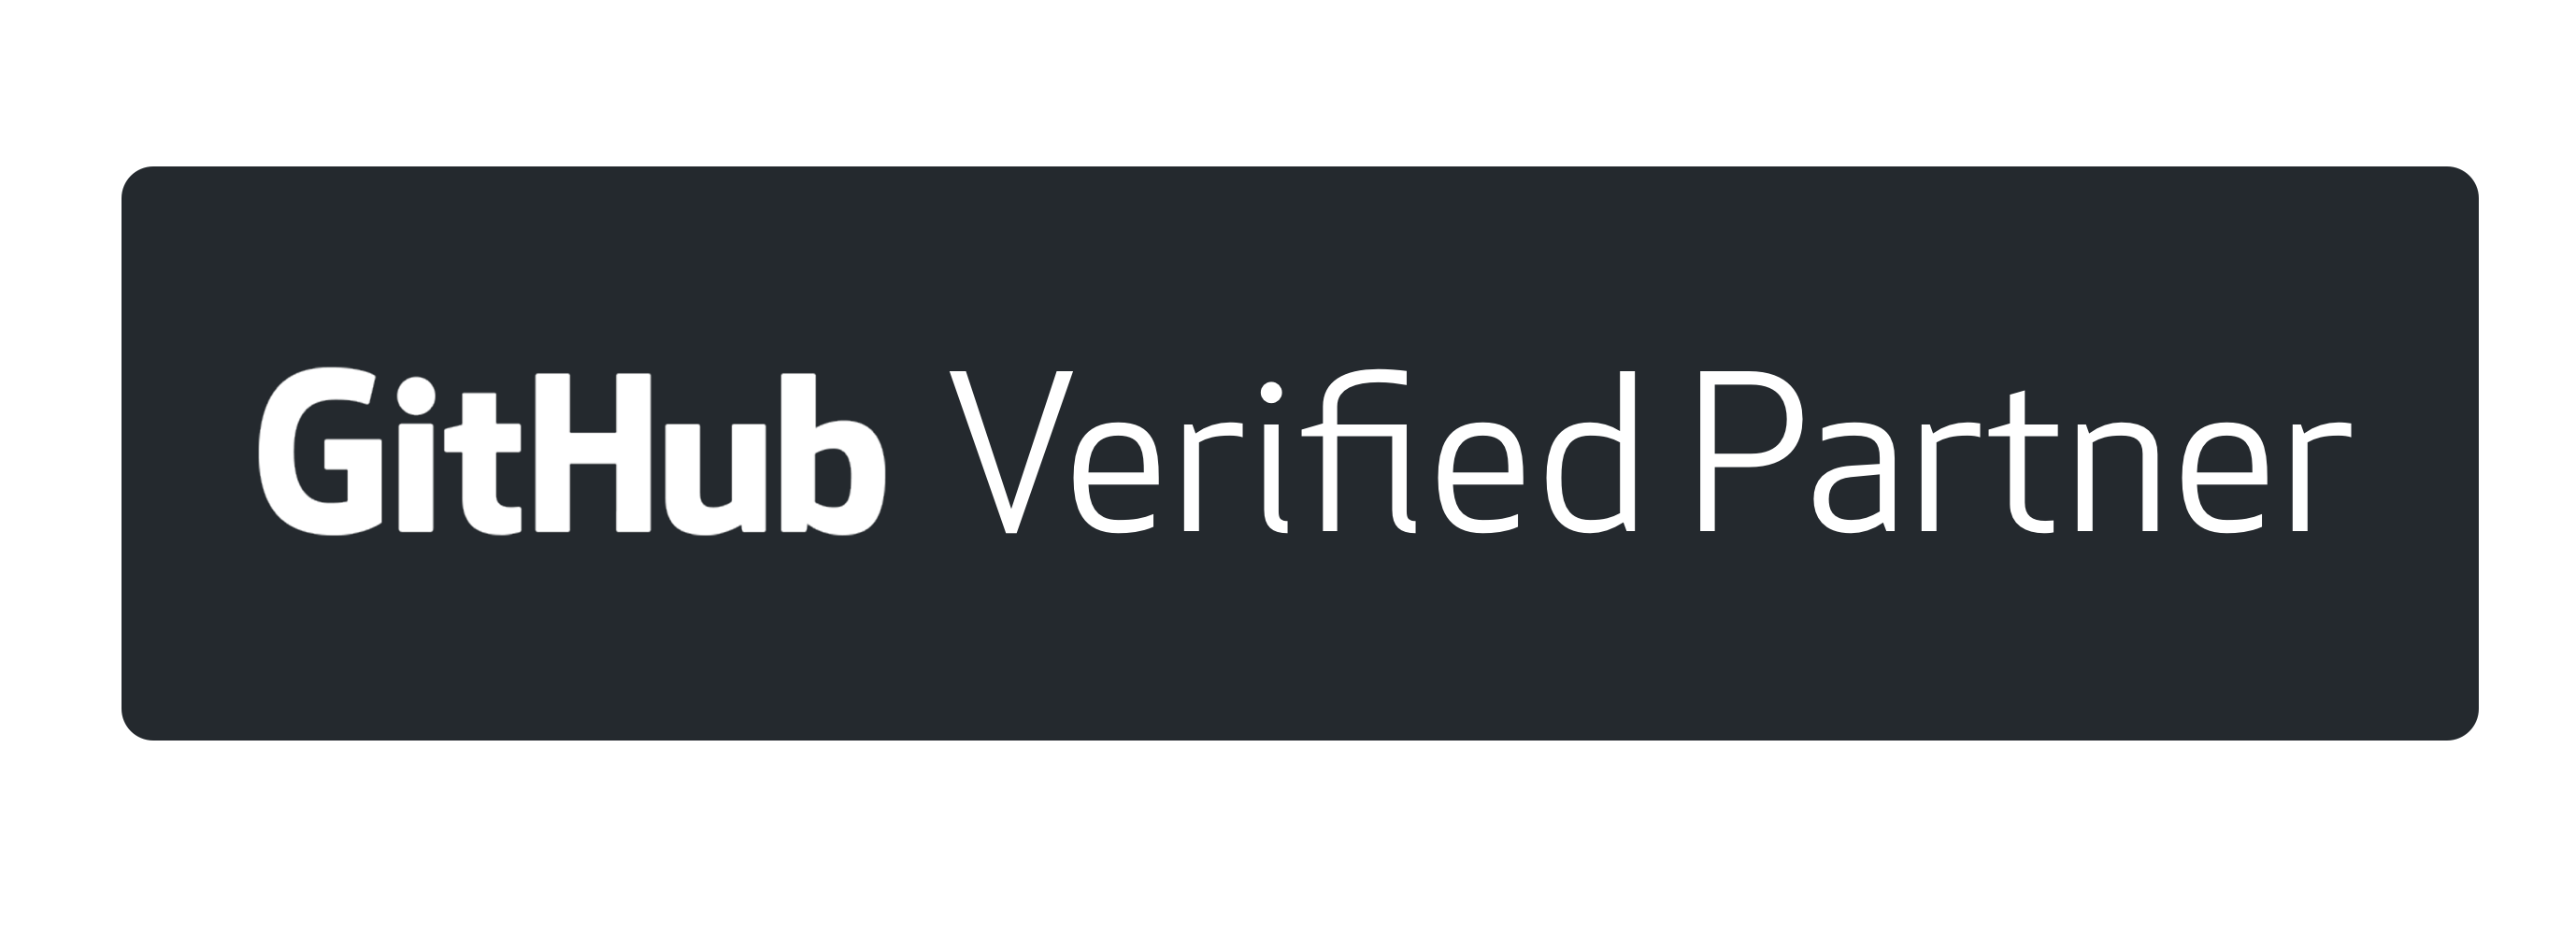 GitHub Verified Partner Badge.